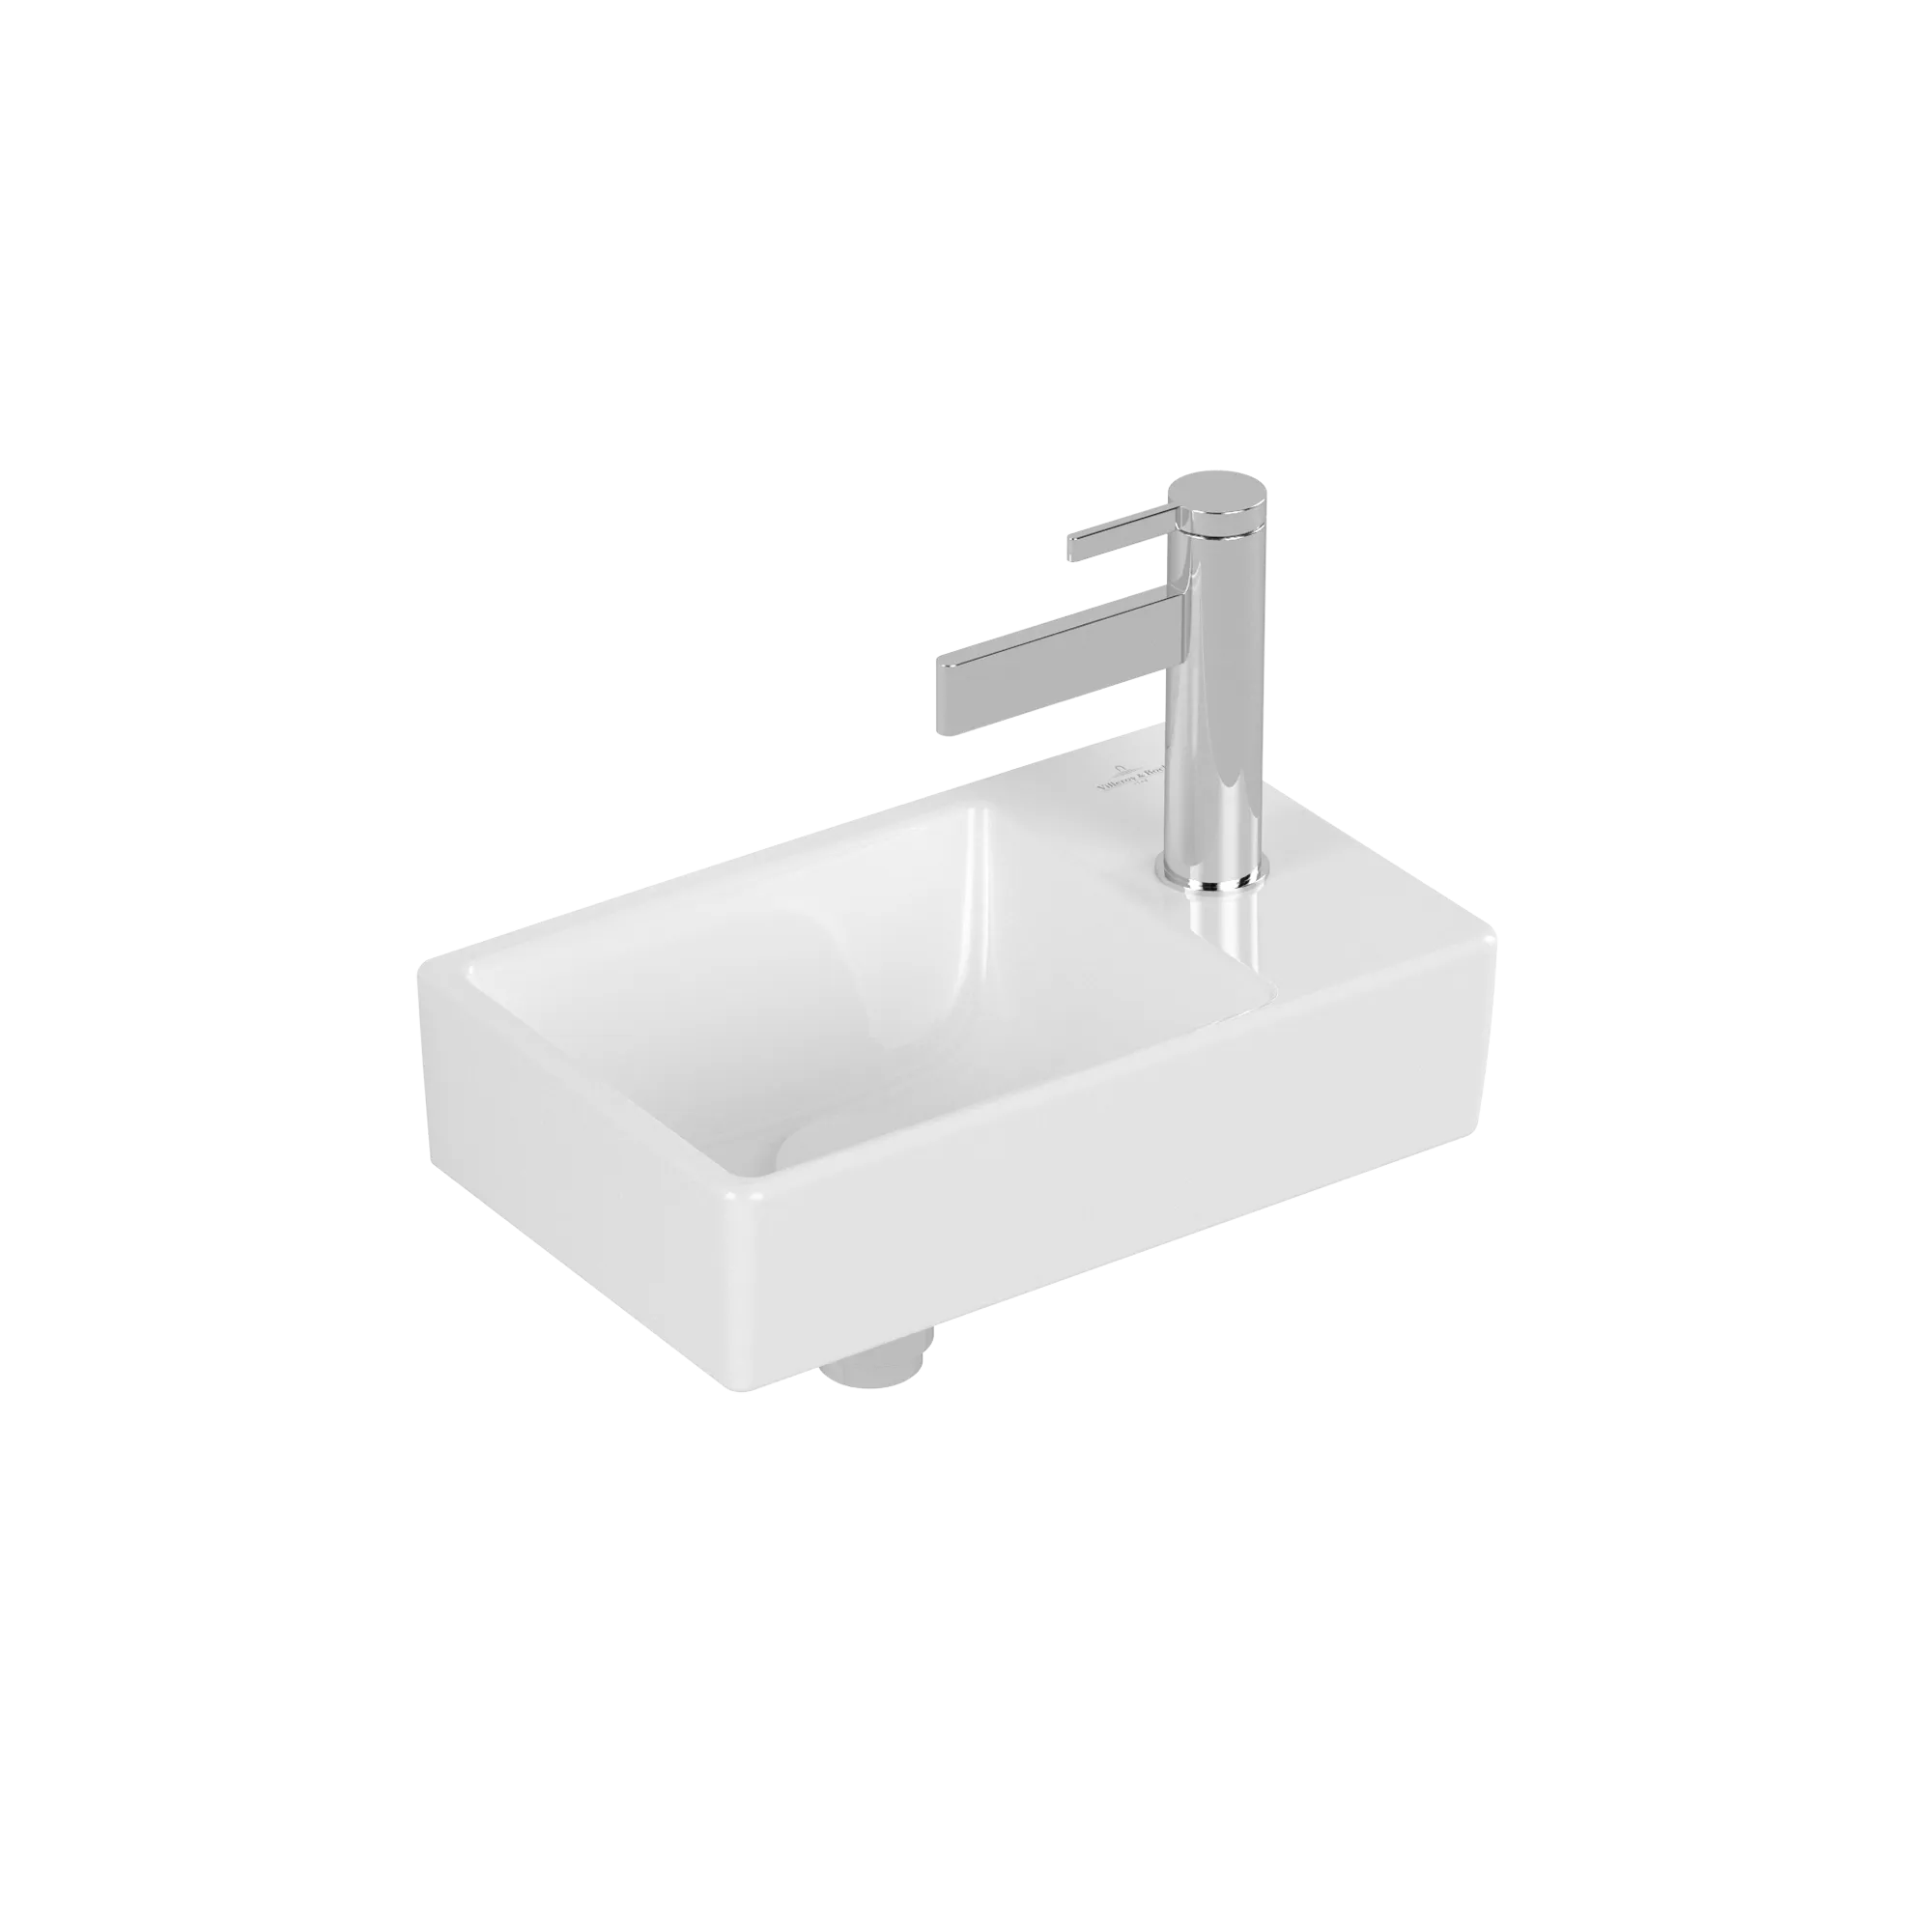 εικόνα του VILLEROY BOCH Avento Handwashbasin, 360 x 220 x 110 mm, White Alpin, without overflow #43003L01